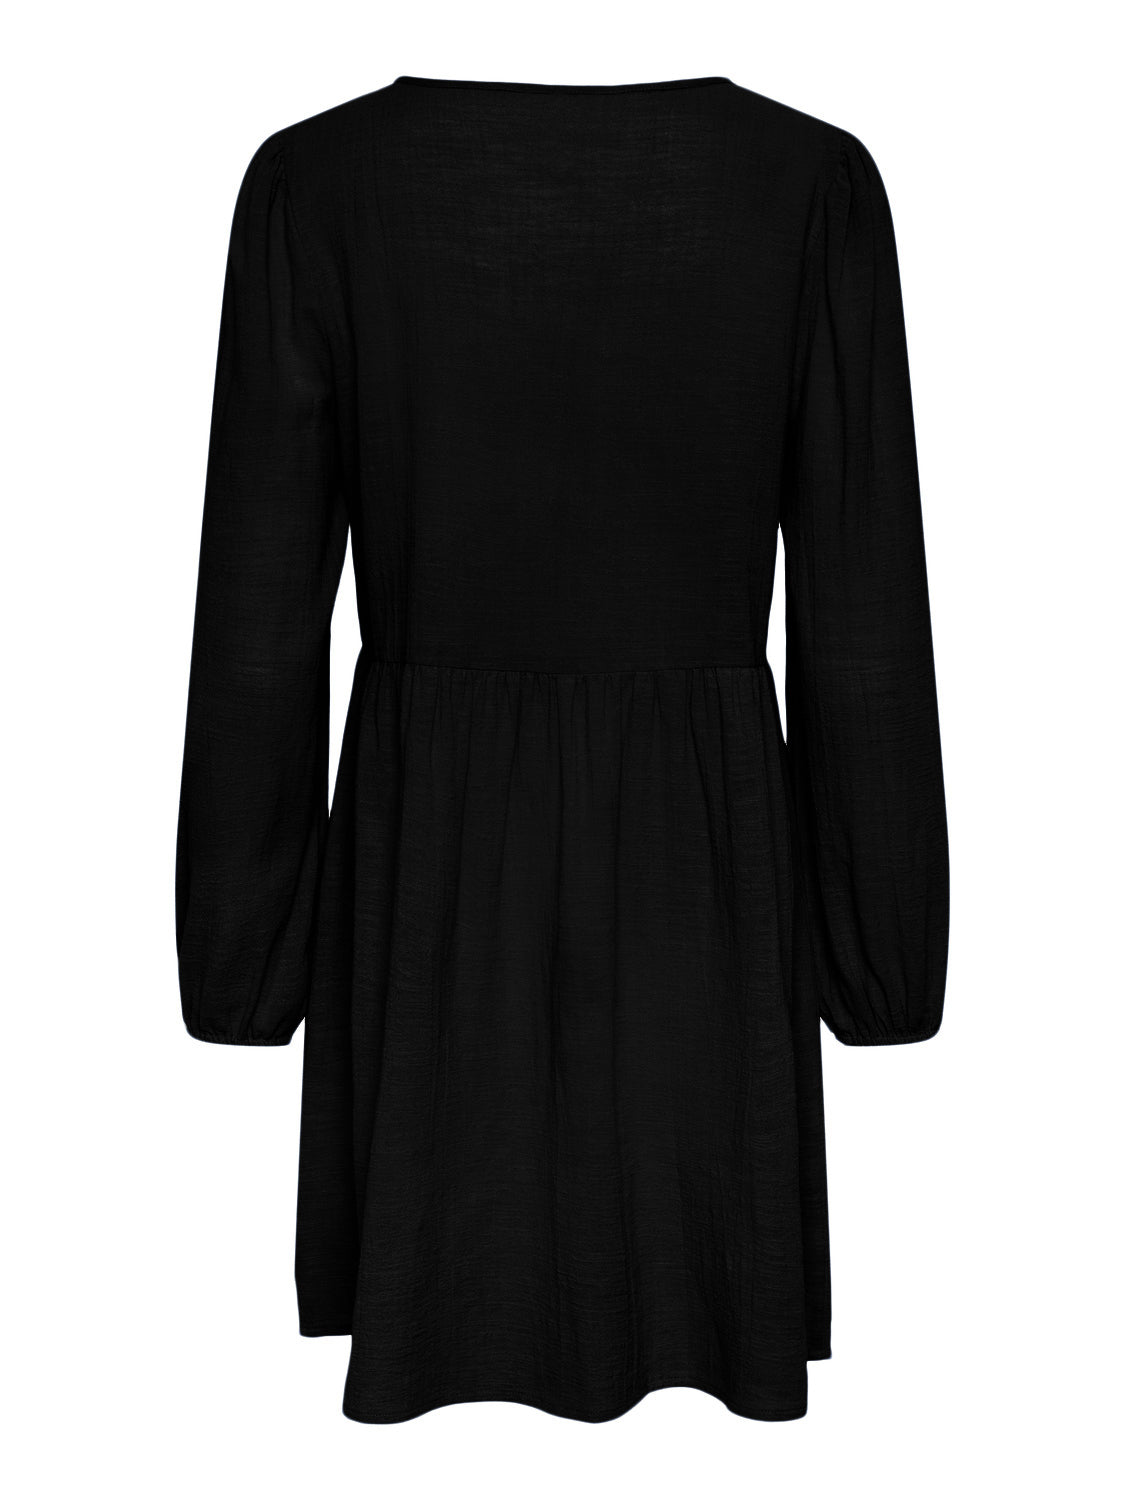 PCJALLY Dress - Black